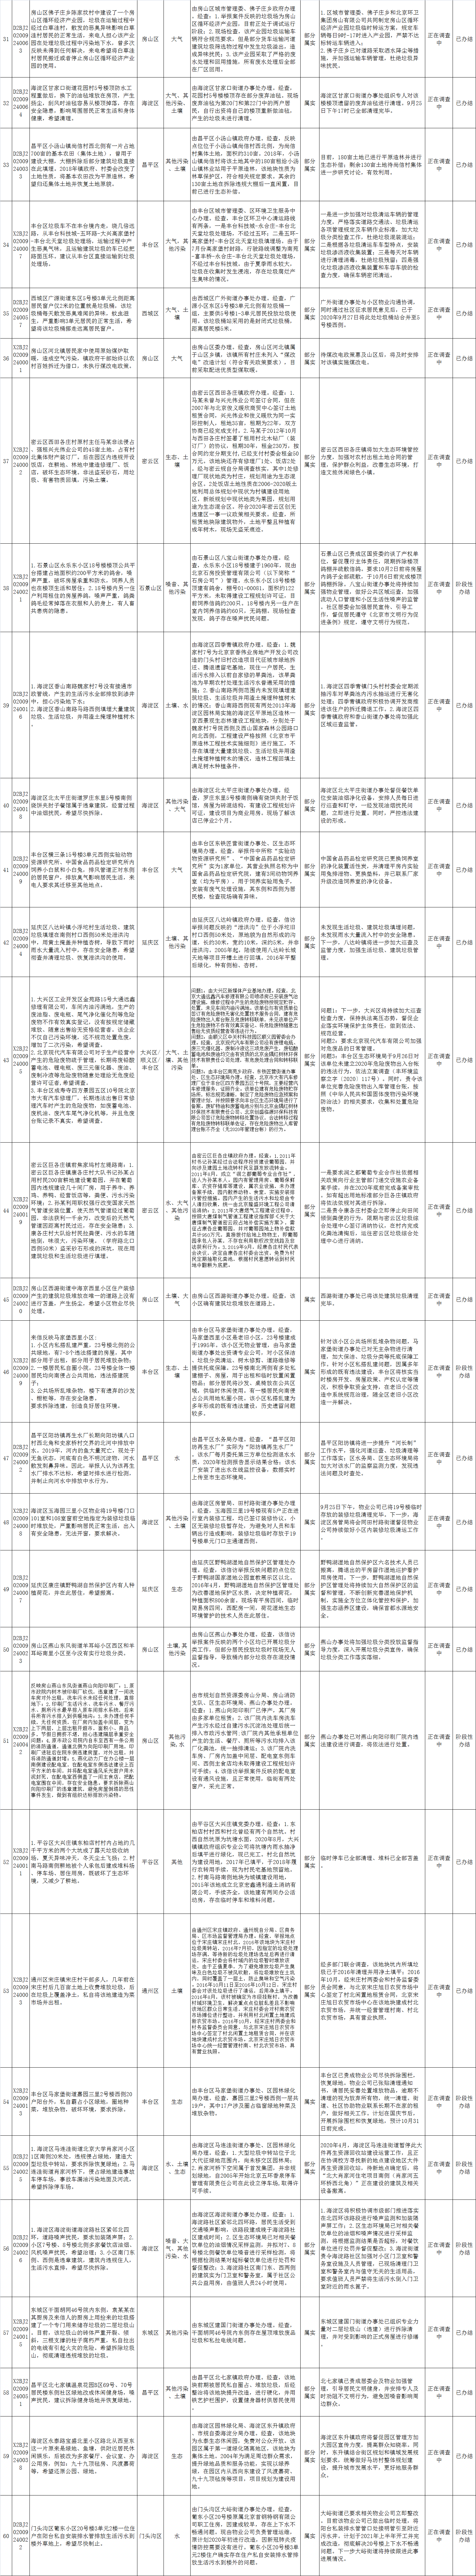 北京市群众信访举报转办和边督边改公开情况一览表(第二十五批)